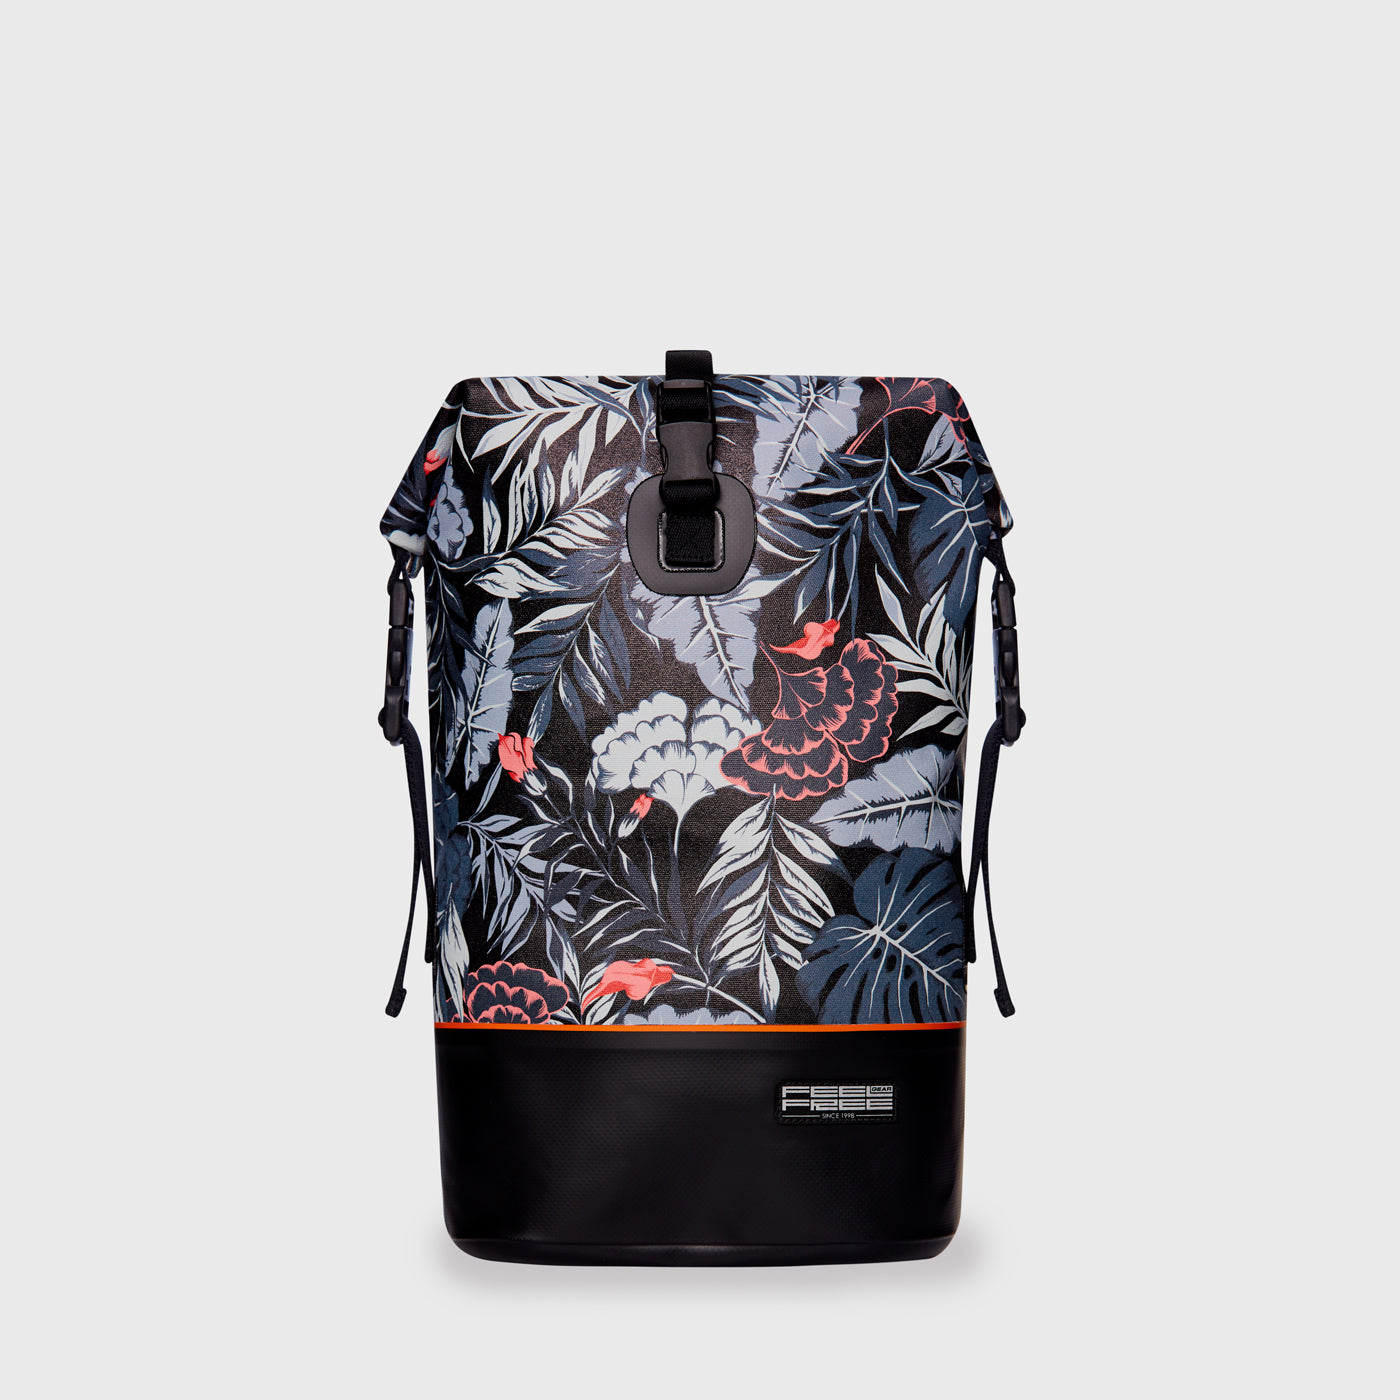 Tropical Mini Dry Tank Backpack